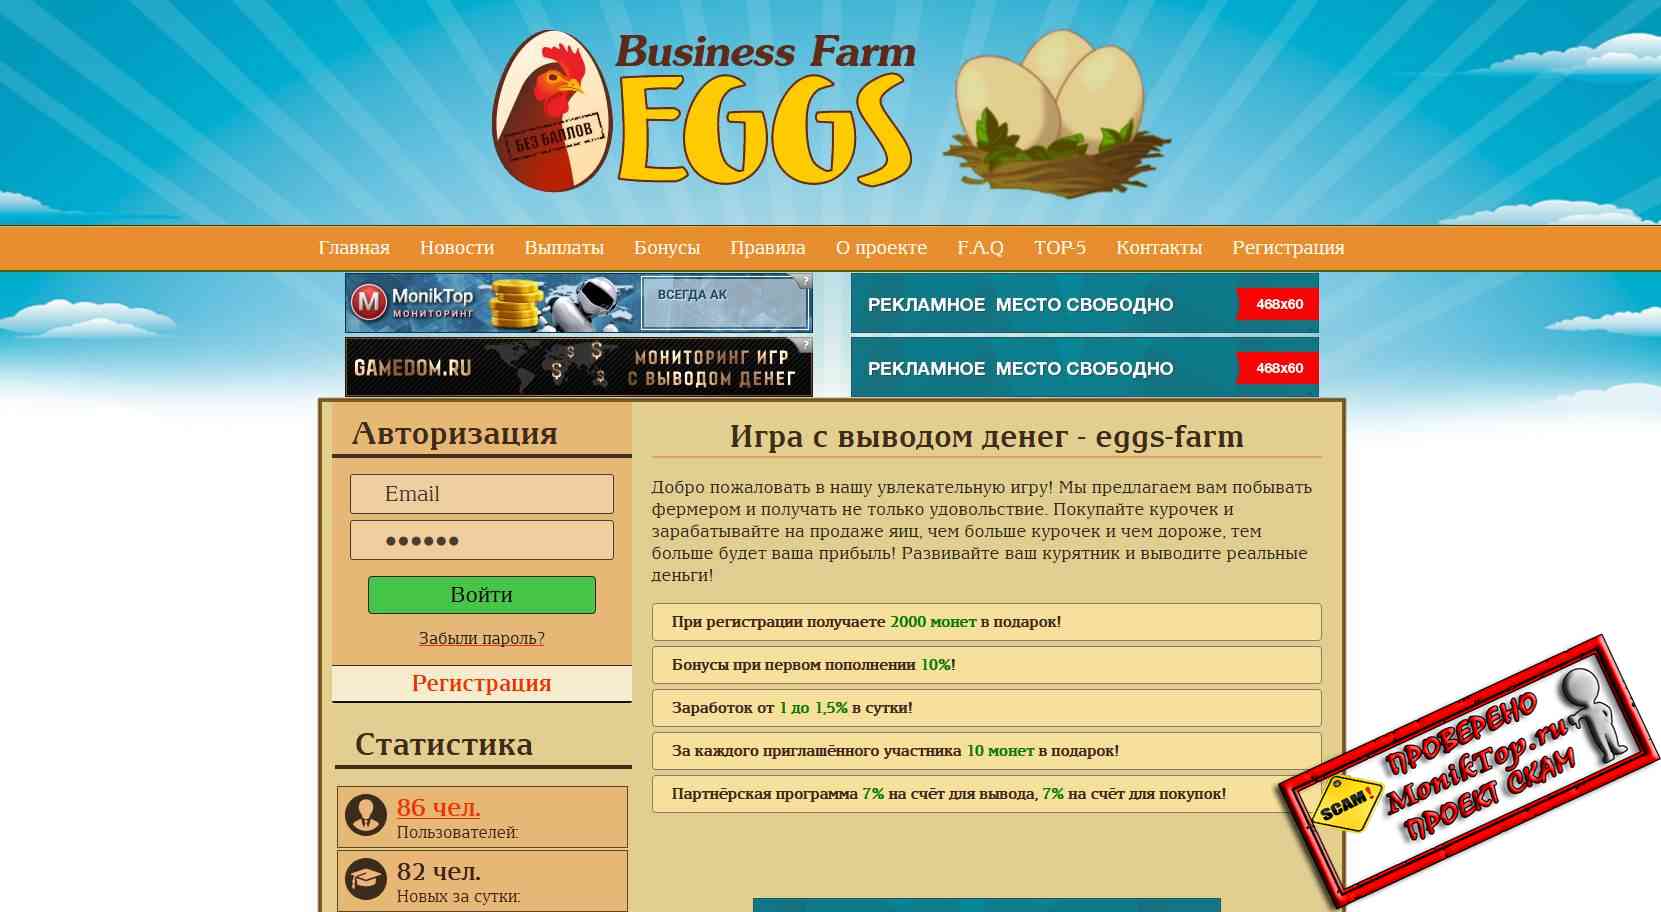 Eggs-Farm